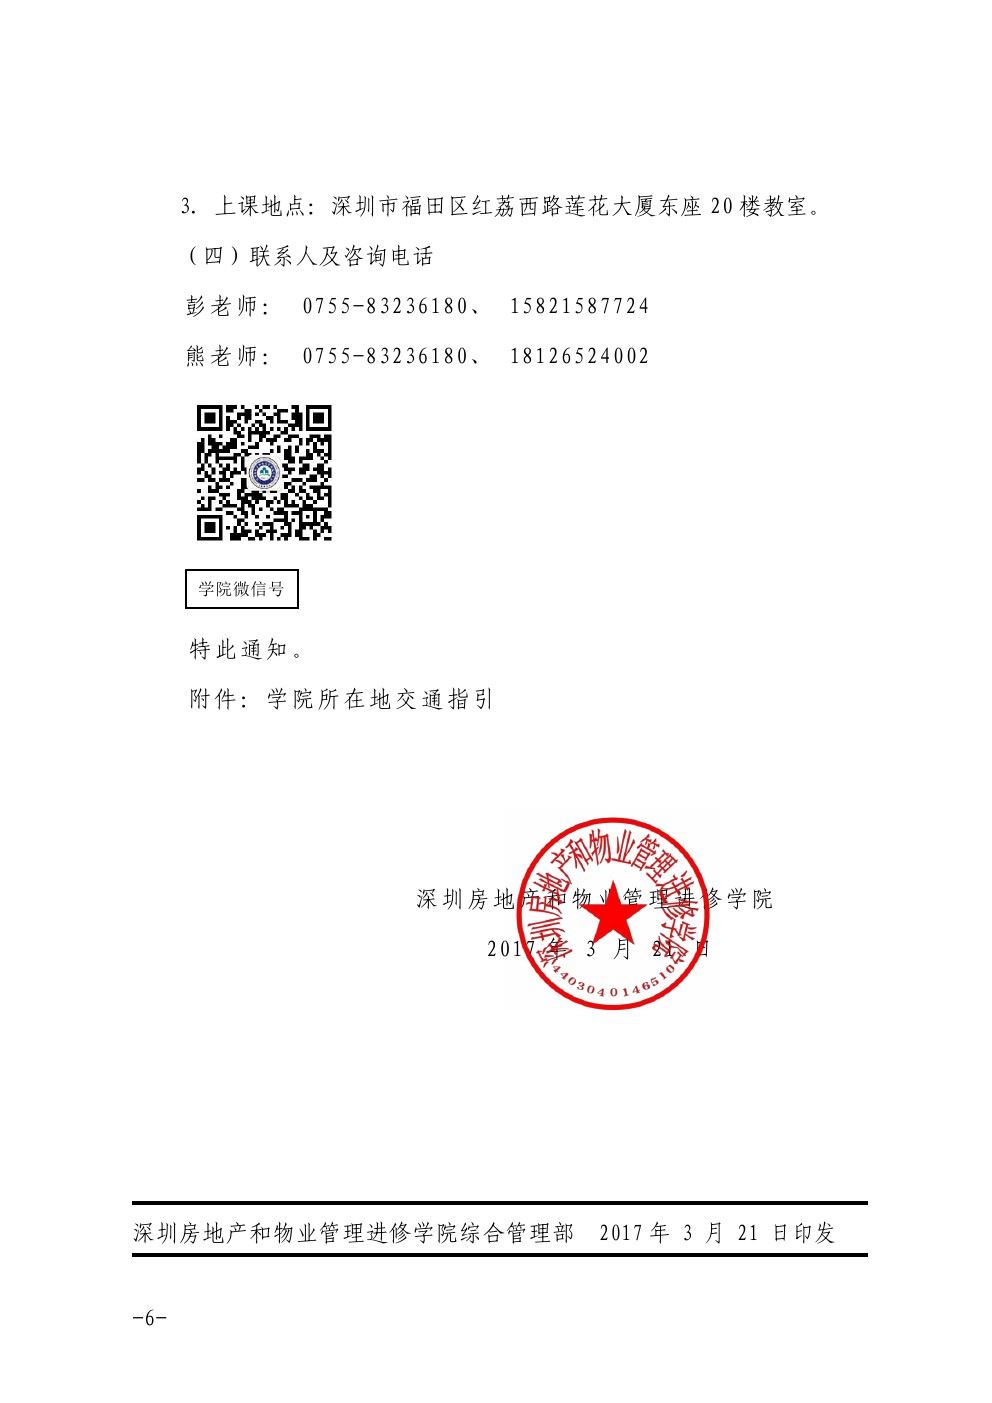 关于在深圳举办石材护理技术项目经理培训班的通知6-乐虎体育直播